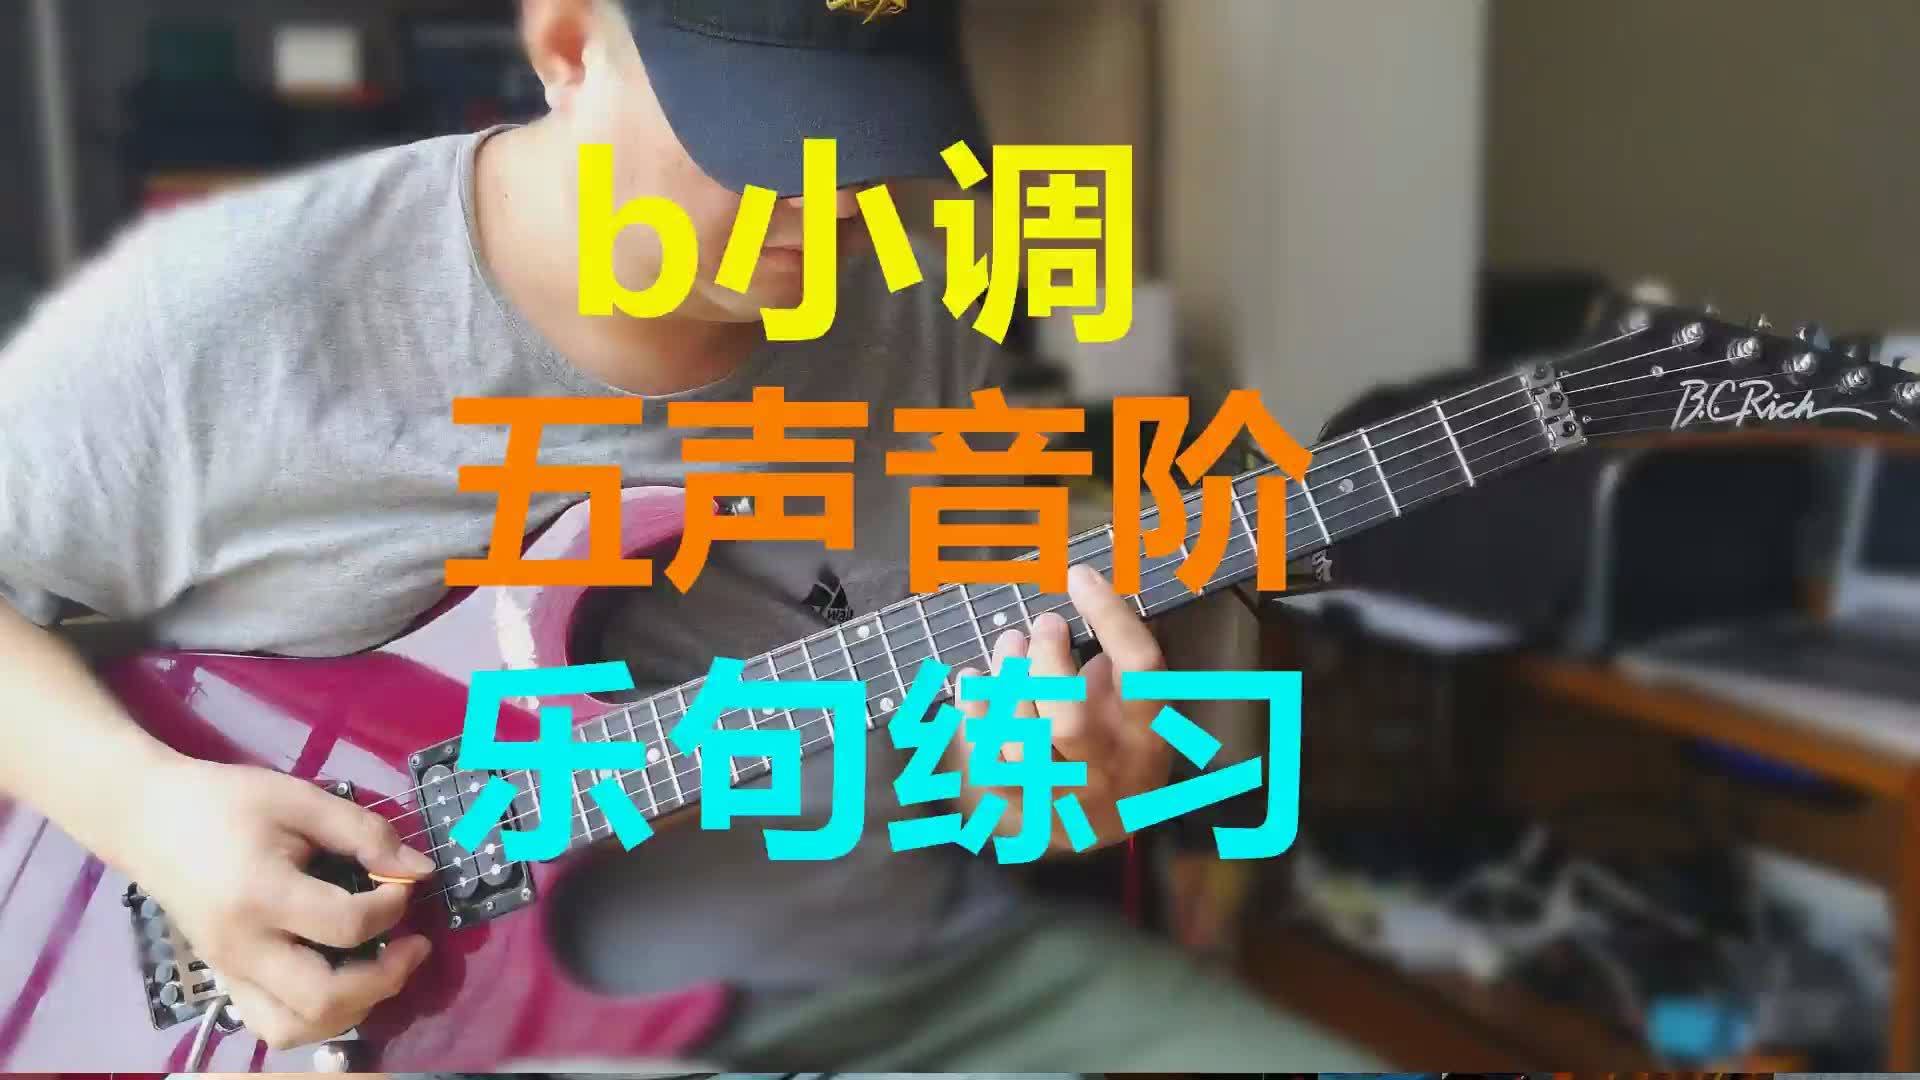 [图]B小调五声音阶乐句练习 西安张龙弹奏示范